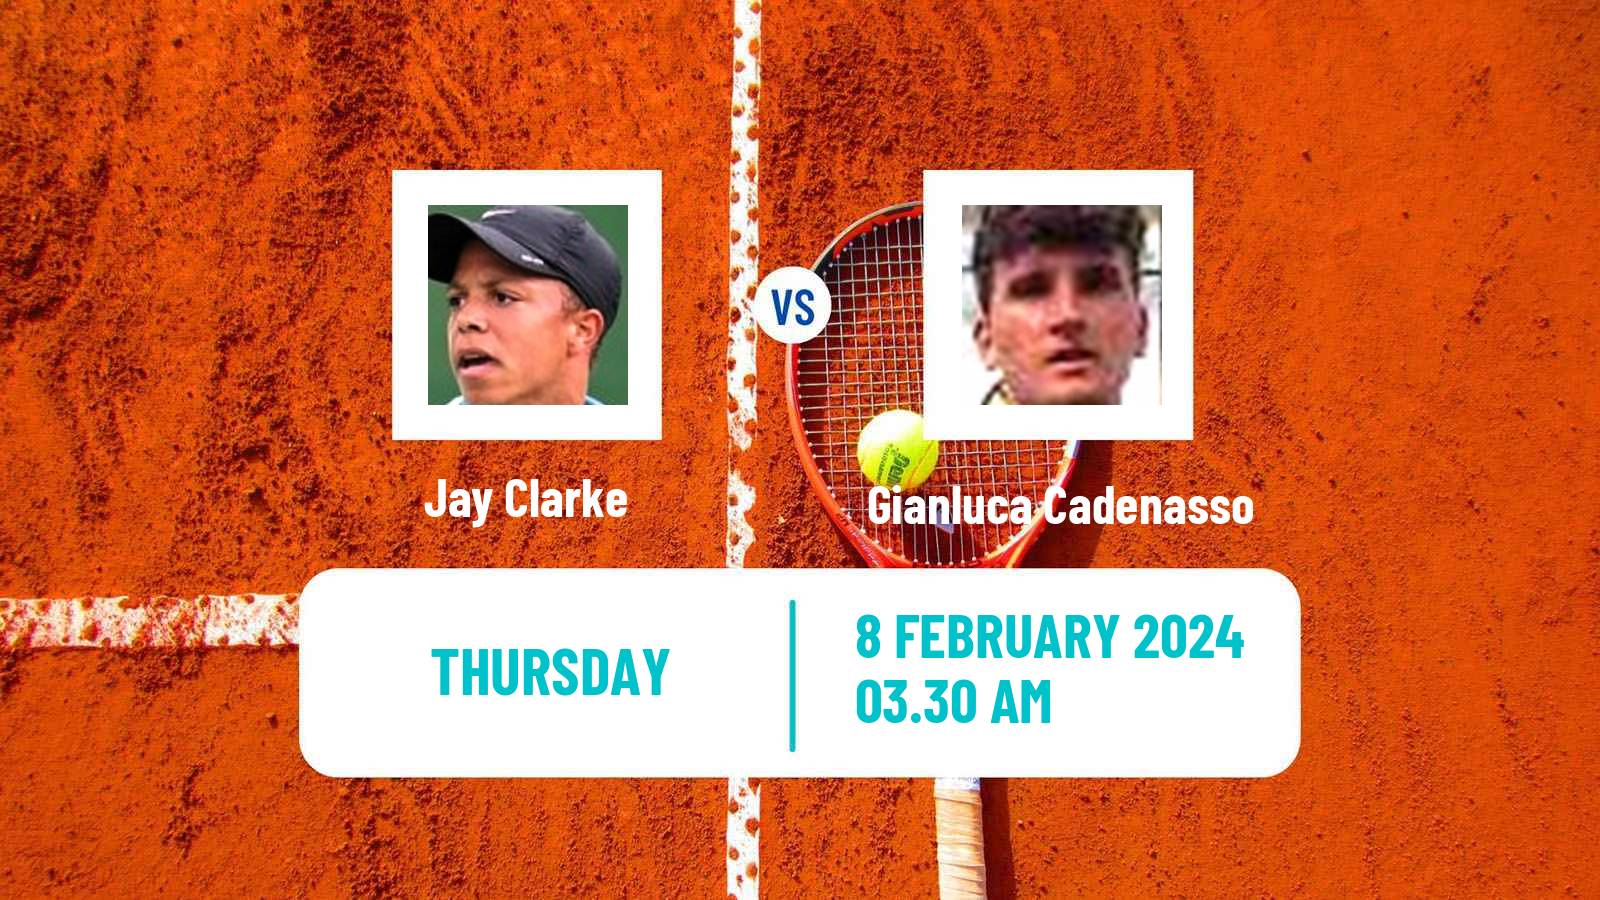 Tennis ITF M25 Hammamet 2 Men Jay Clarke - Gianluca Cadenasso